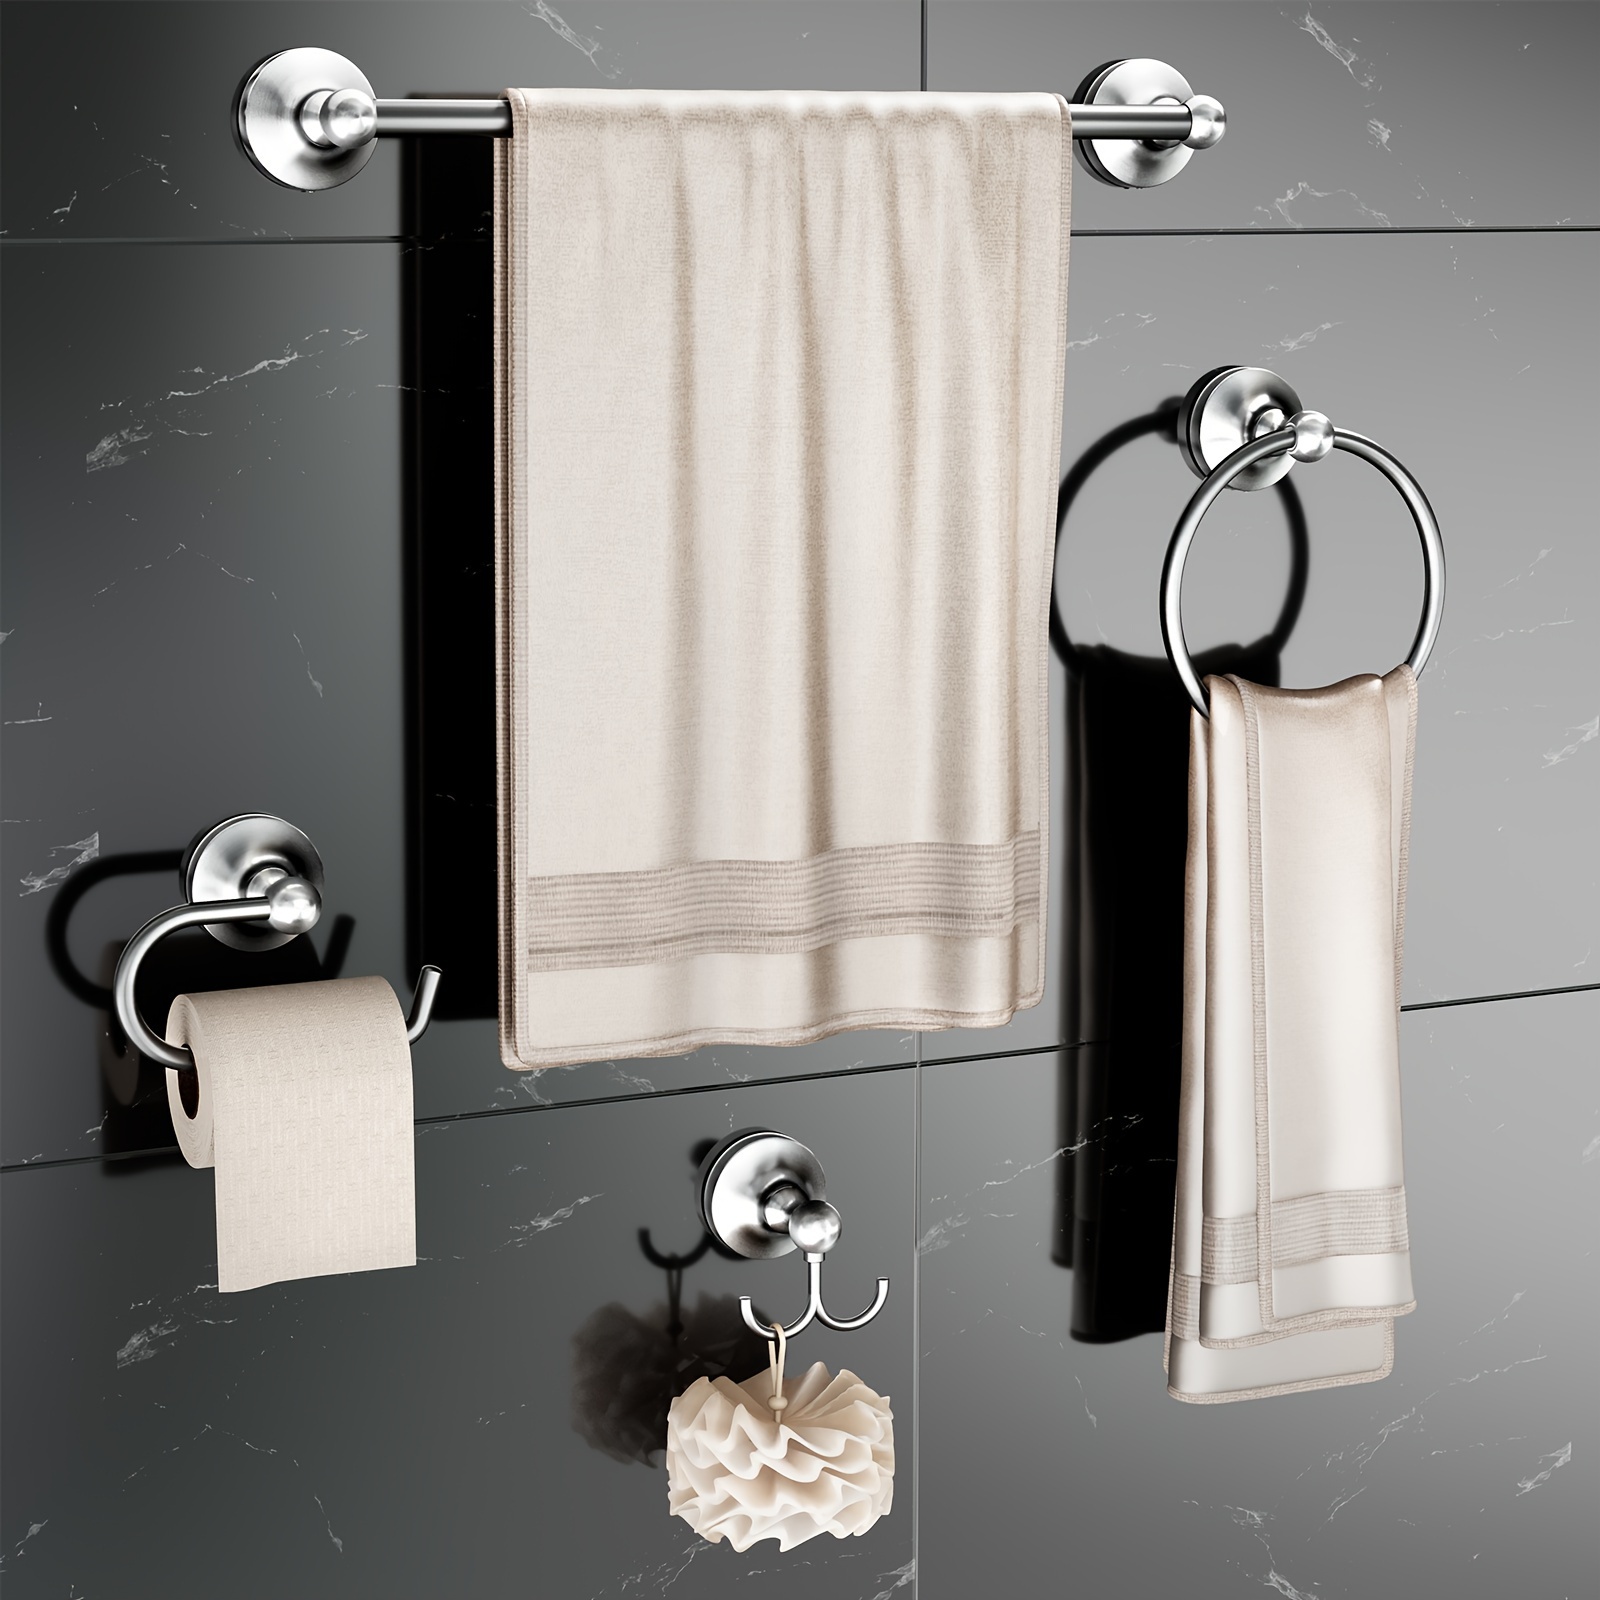 Set accesorios baño sin taladro color negro